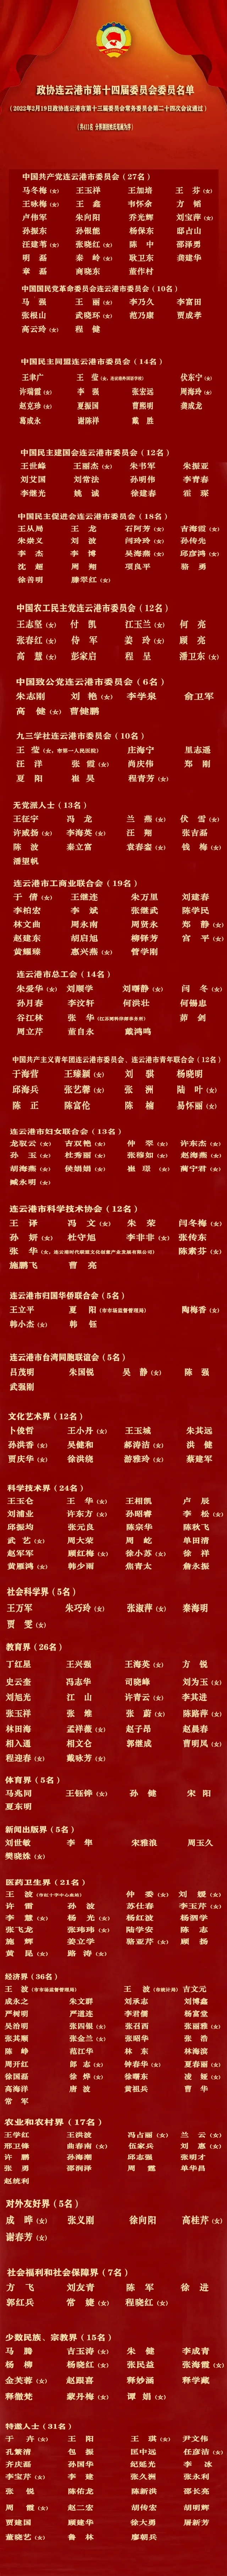 政协连云港市第十四届委员会委员名单.webp.jpg